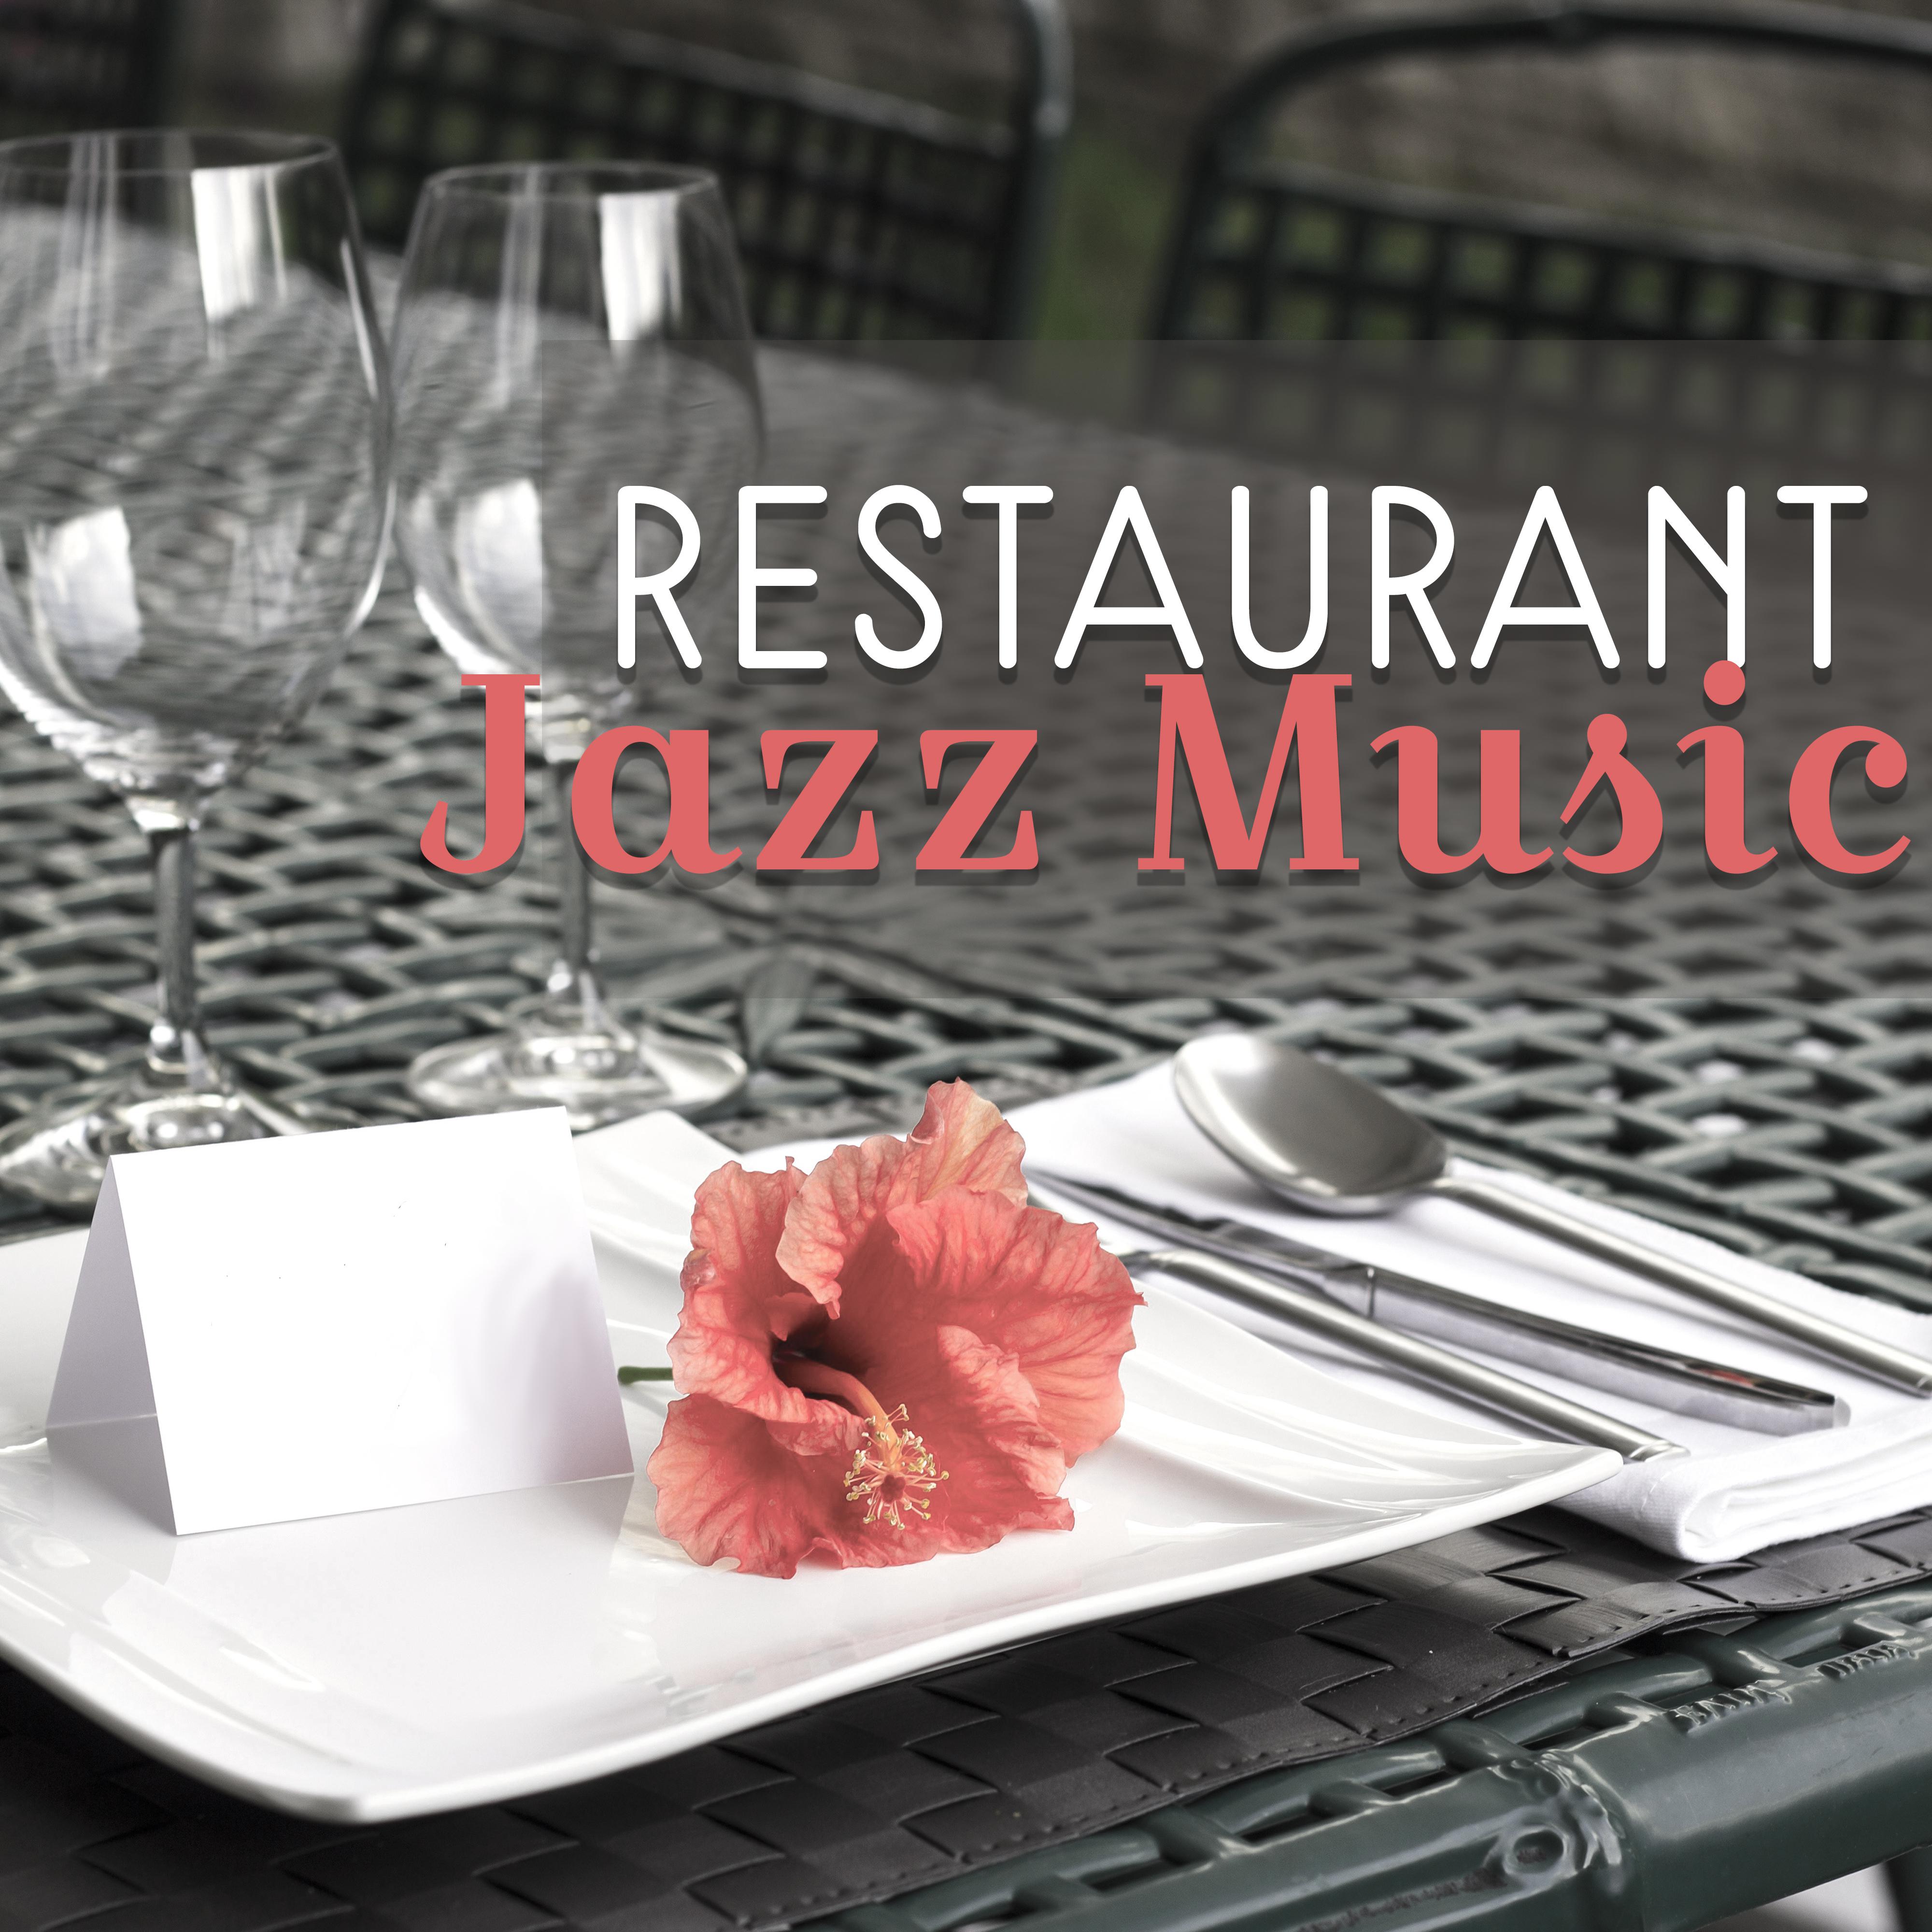 Restaurant Jazz Music – Best Background Piano Music, Jazz for Restaurant, Dinner Time, Coffee Jazz